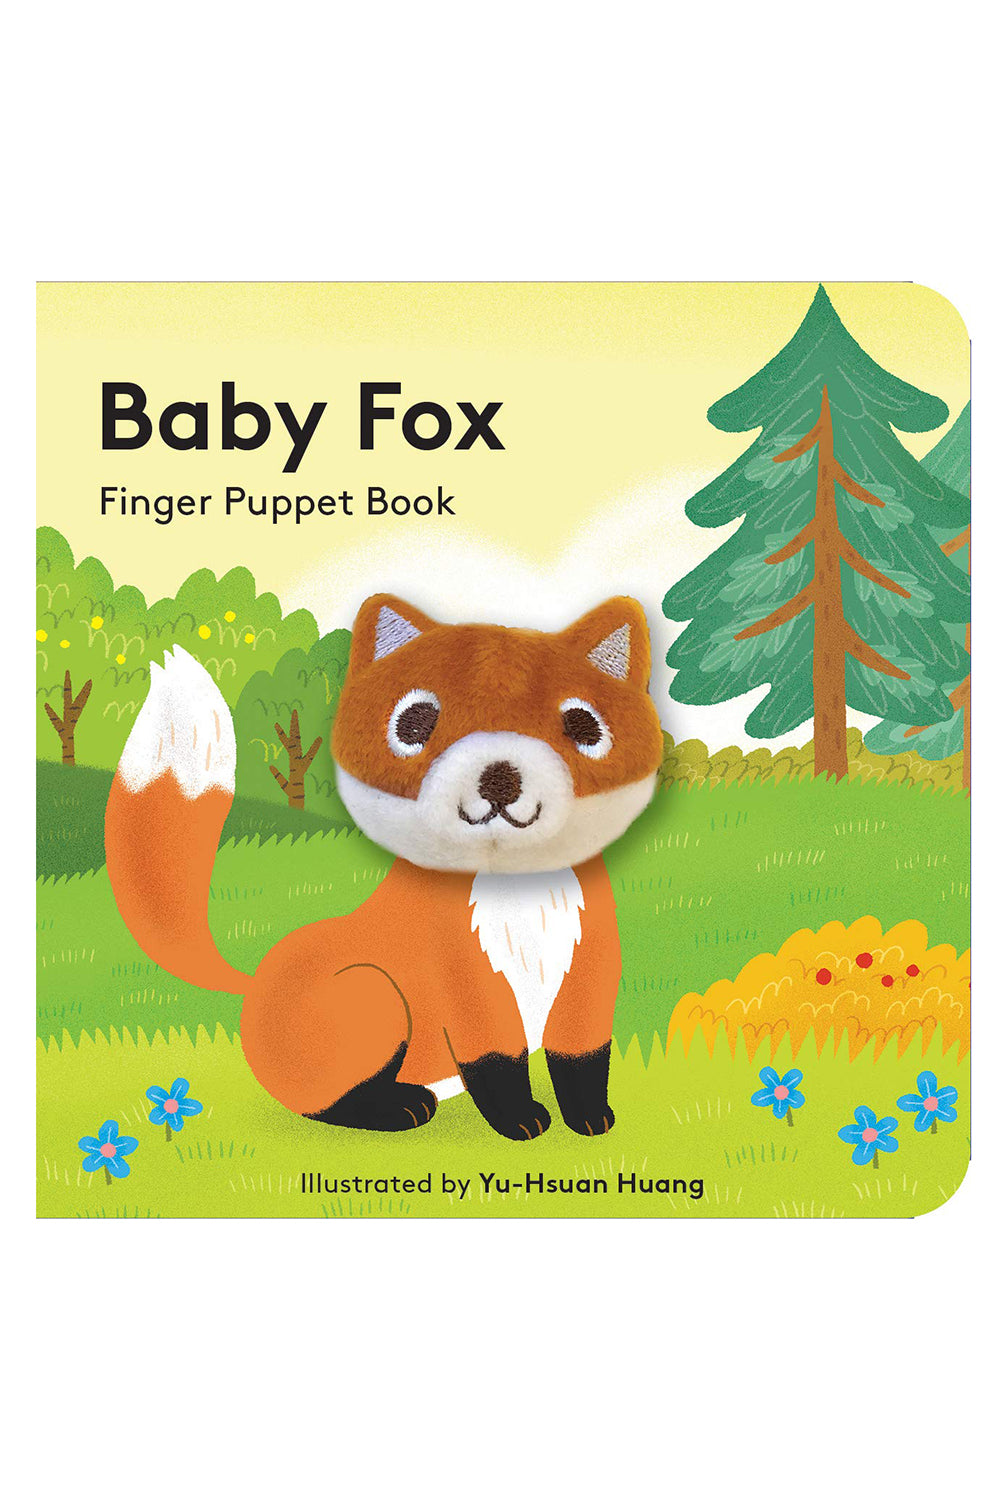 Finger Puppet Book - Baby Fox